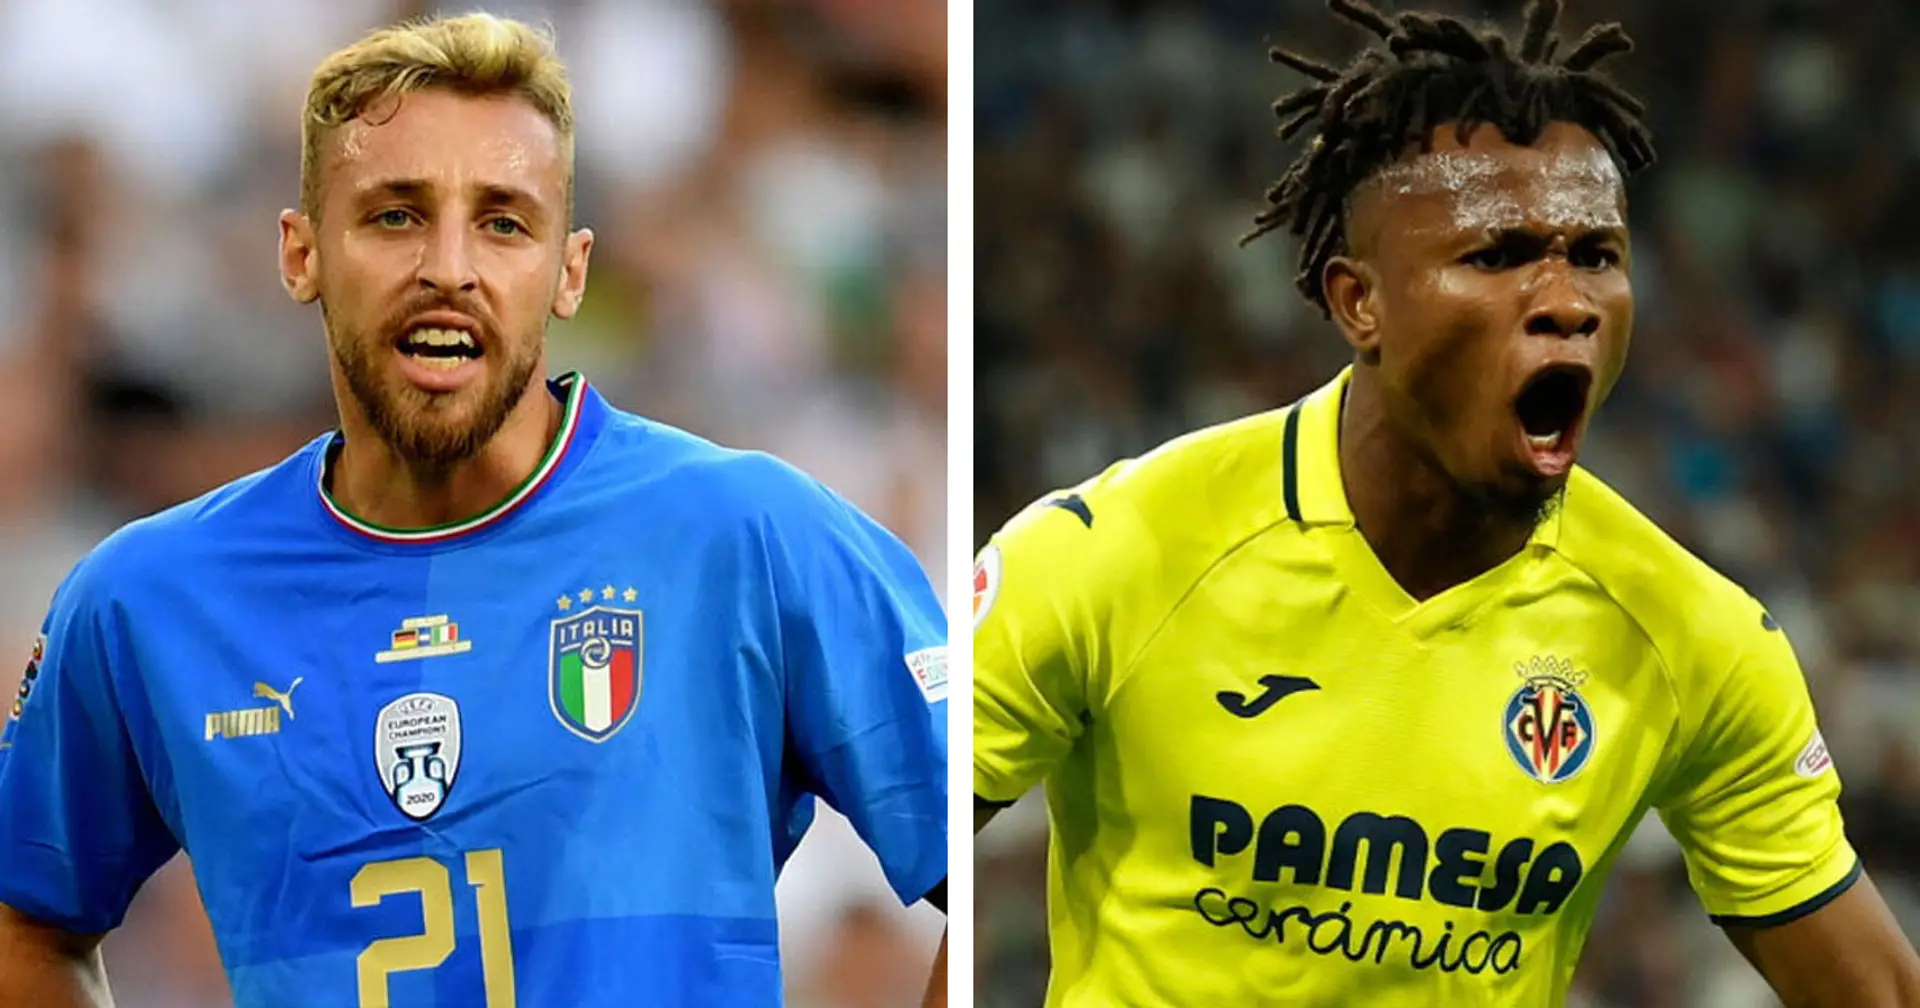 Le Top 3 notizie di mercato sul Milan e le migliori trattative delle rivali in Serie A di ieri